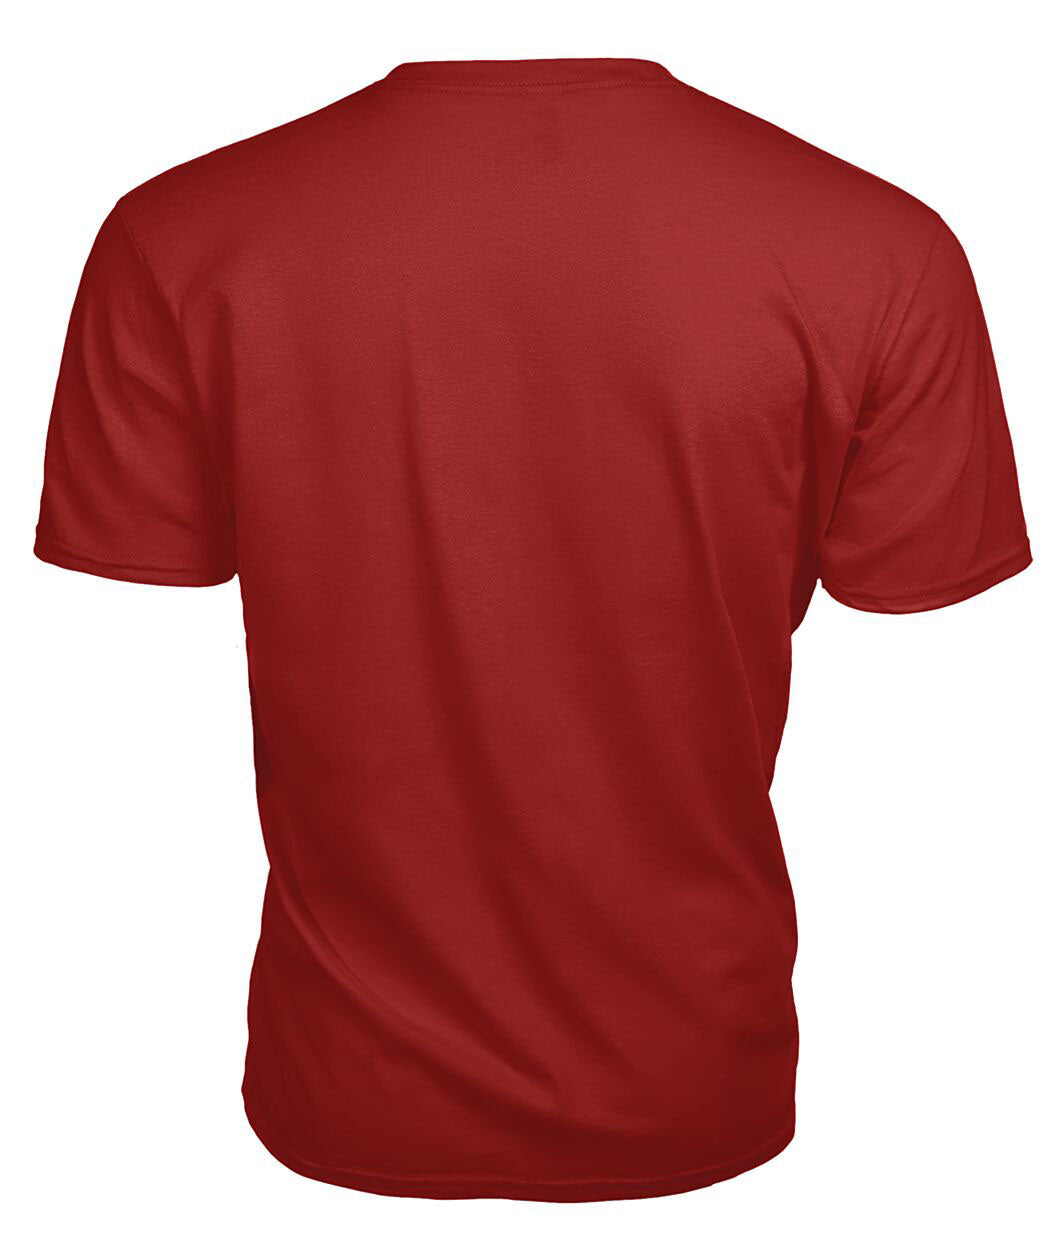 Gibson Tartan Crest 2D T-shirt - Blood Runs Through My Veins Style